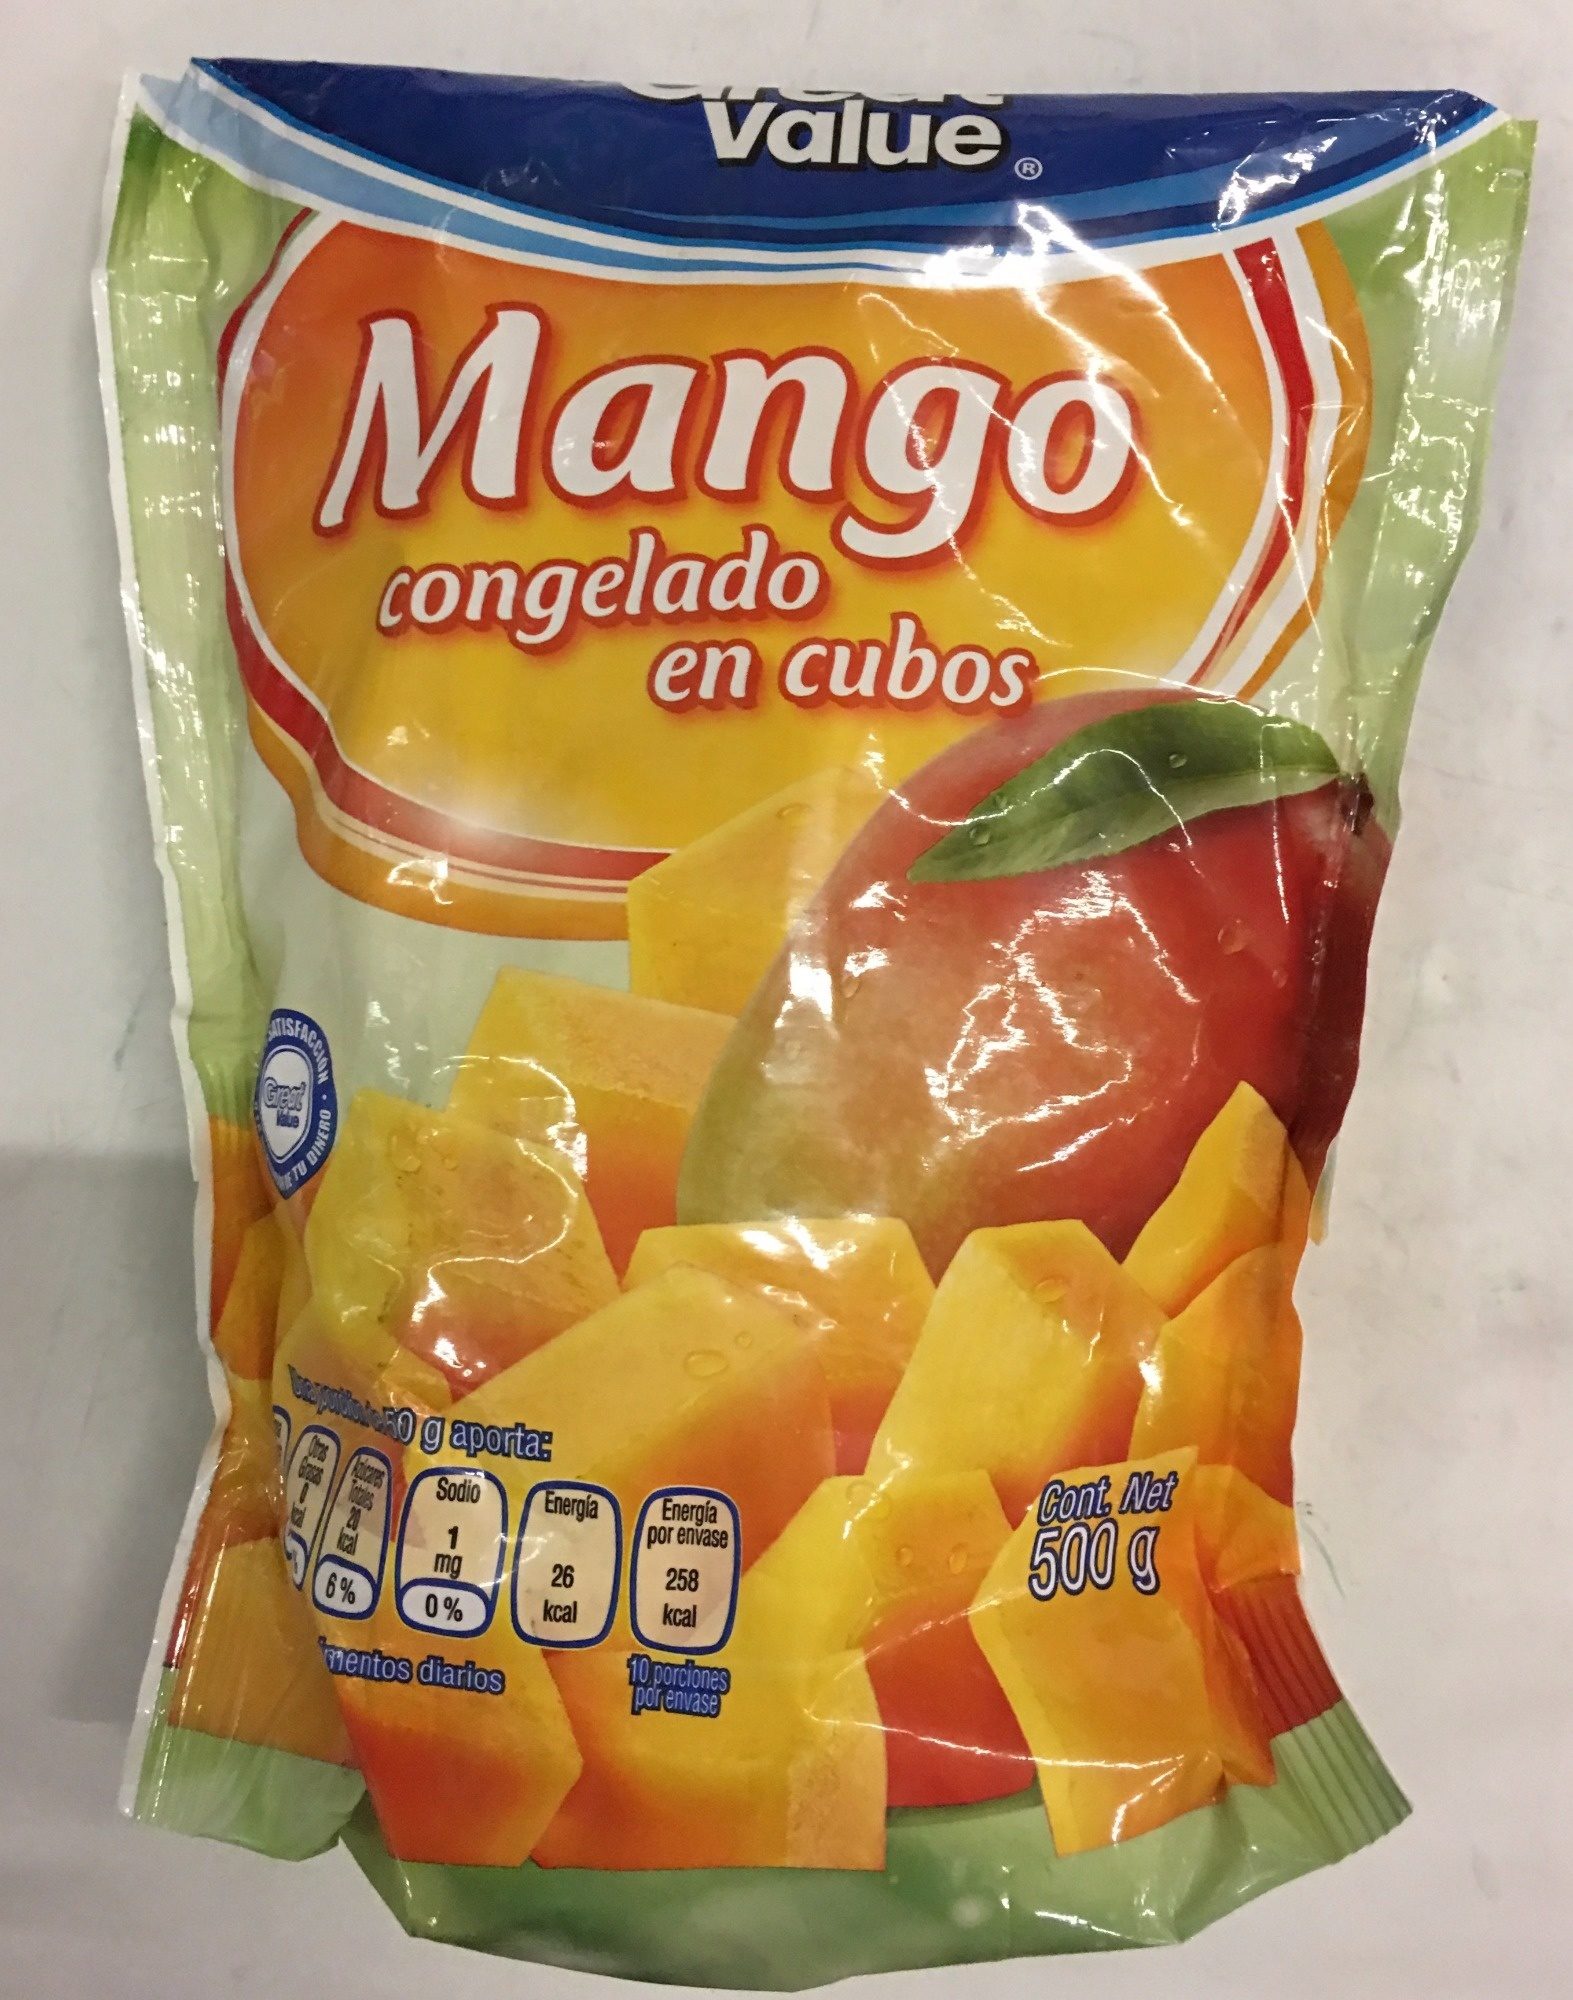 MANGO CONGELADO EN CUBOS - Producto